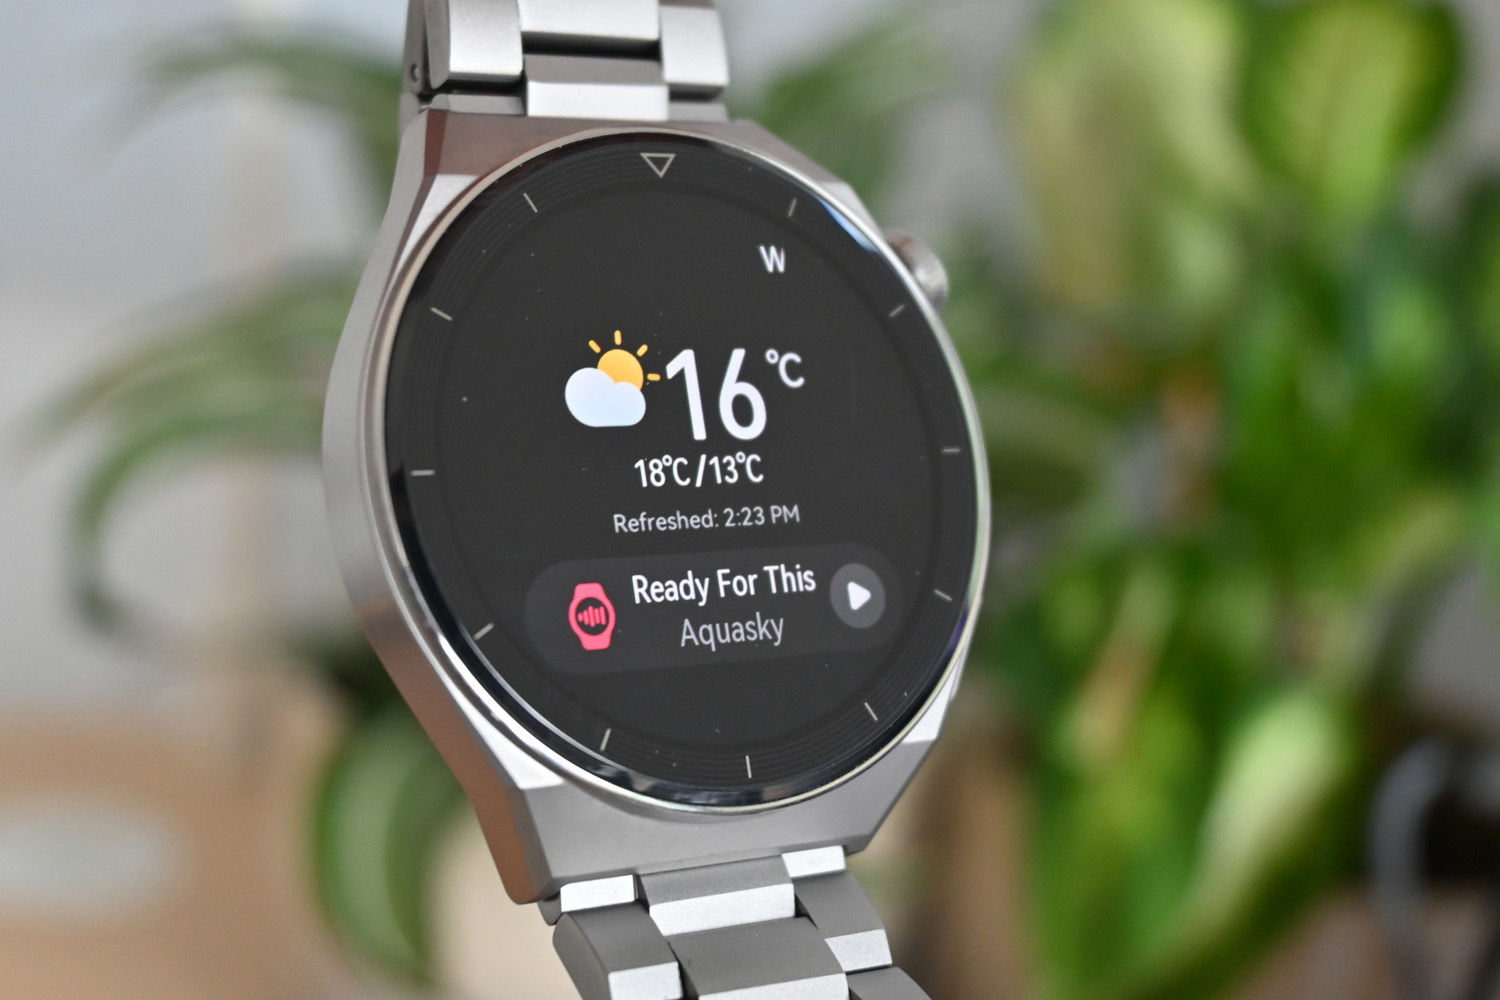 Huawei Watch 3 Pro review -  news